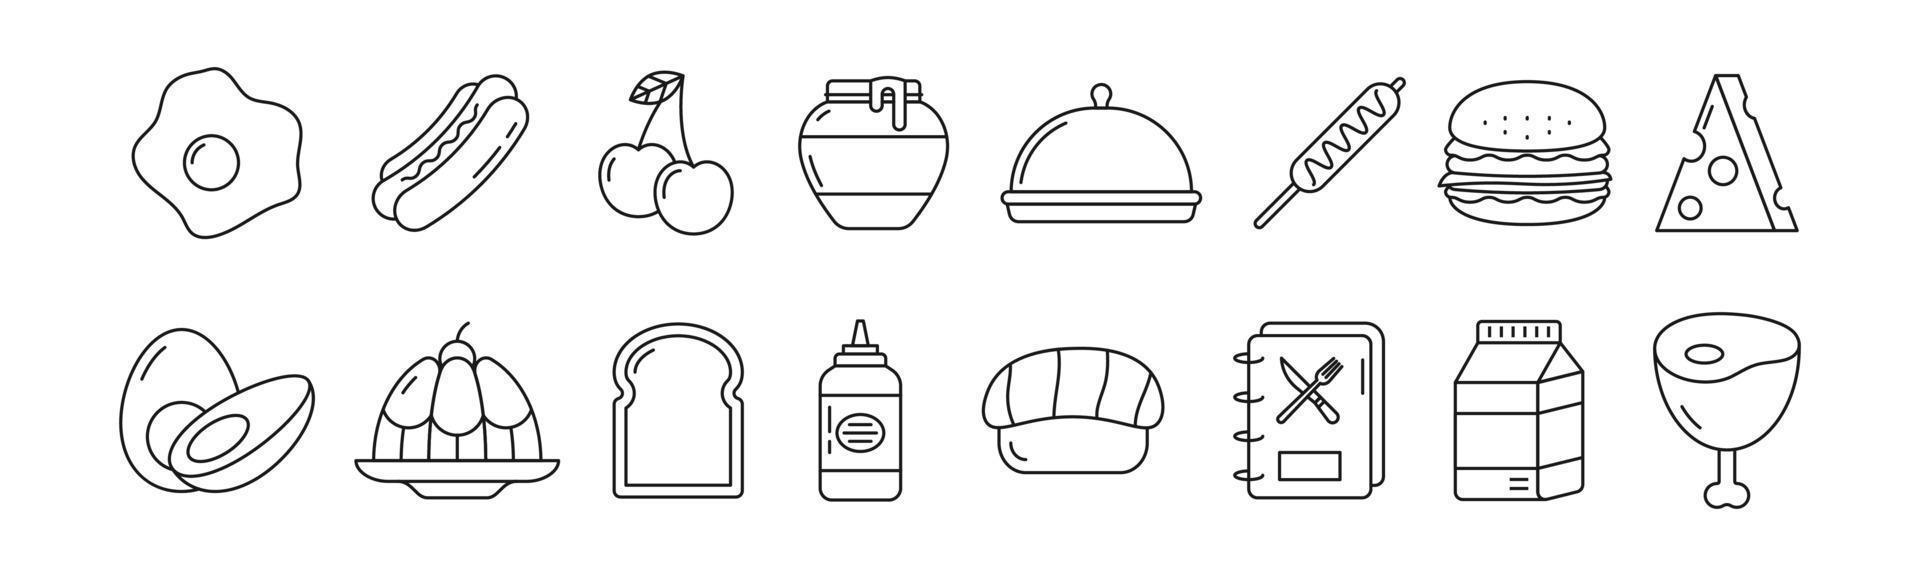 aliments et boissons ligne art icon set design modèle illustration vectorielle vecteur